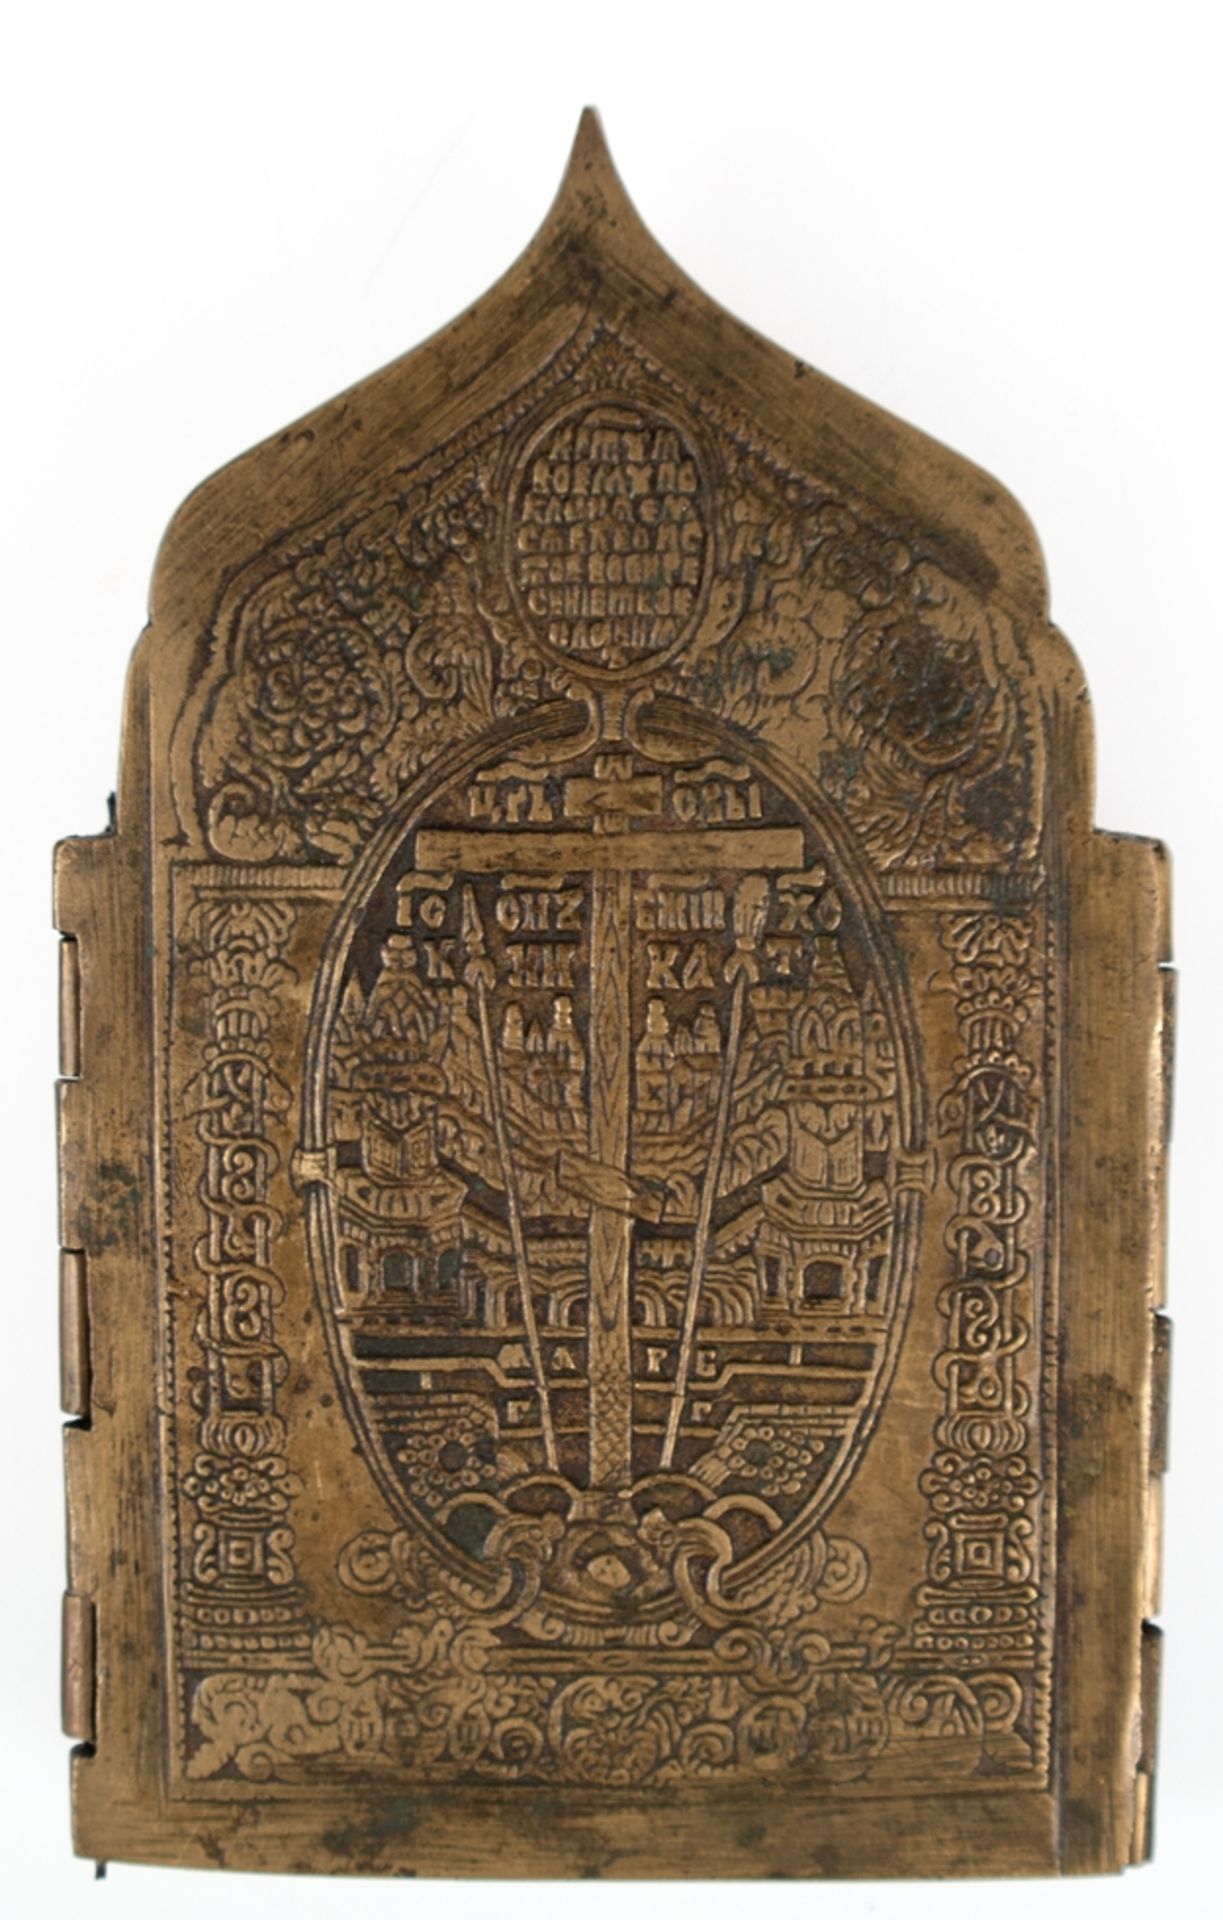 Reiseikone, Bronze, 19. Jh., Tetraptychon, 4-flügelig, klappbar, ges. 16x36,5 cm - Bild 2 aus 2